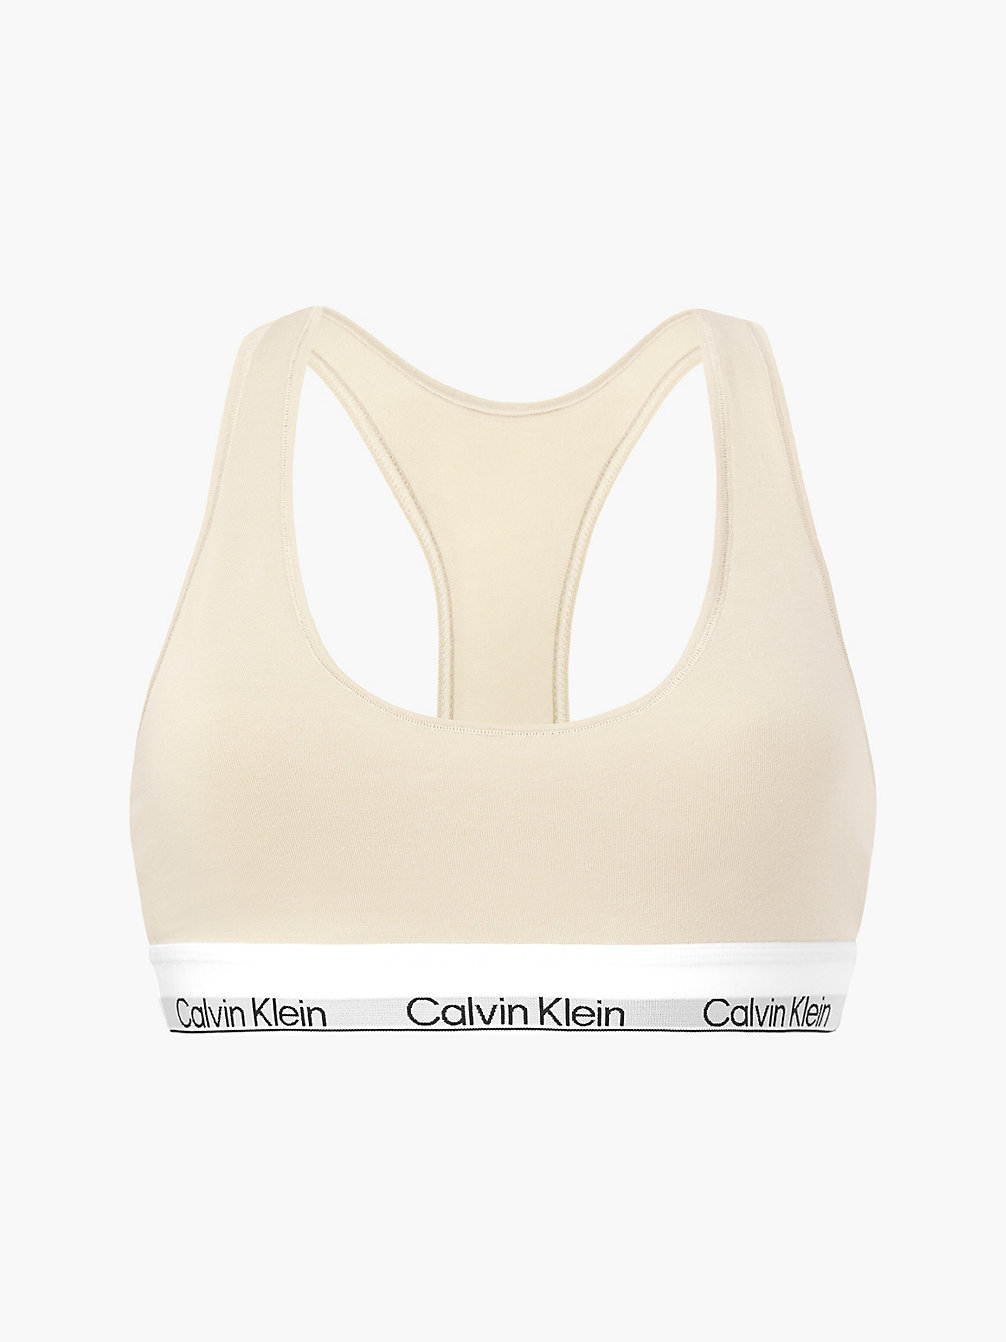 STONE > Bralette – Modern Cotton > undefined Damen - Calvin Klein